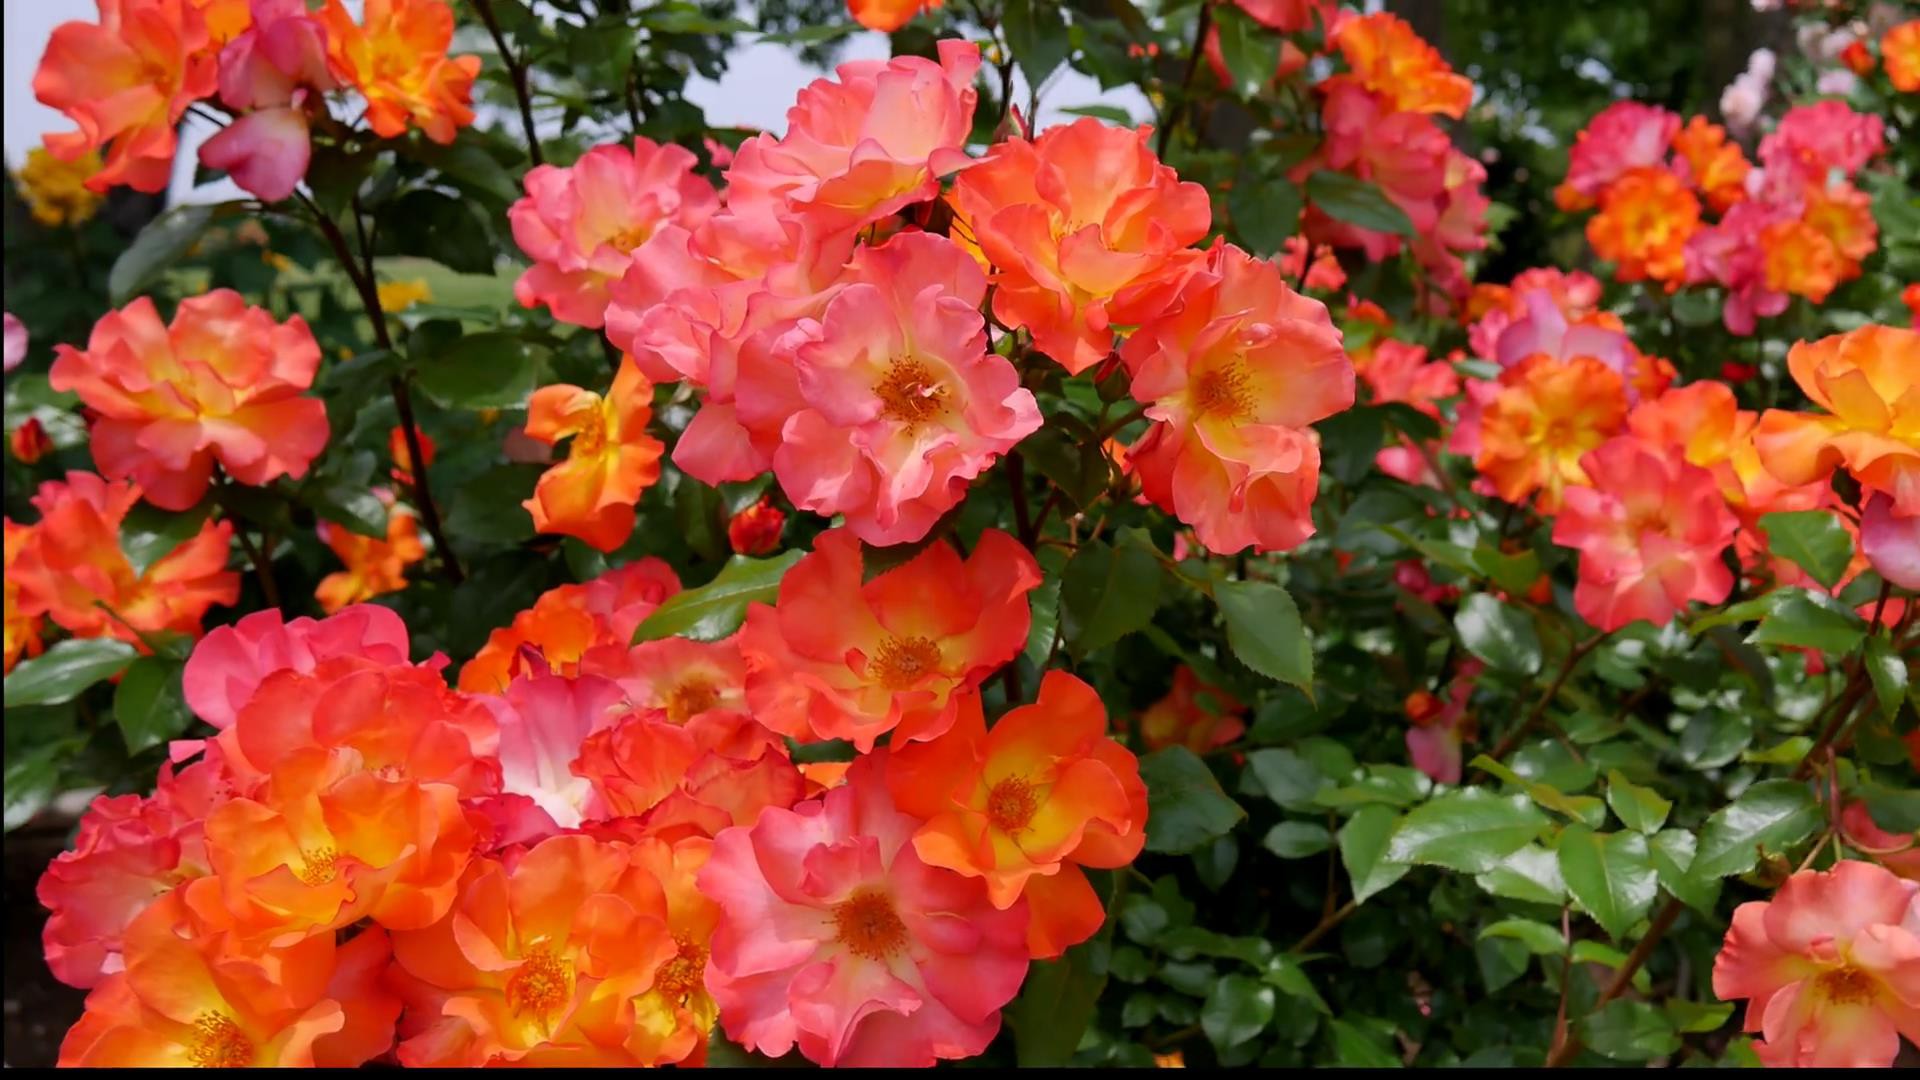 Đến thăm khu vườn trên đảo ở Nhật Bản với 2.600 cây hoa hồng rung rinh trước gió đẹp mê mẩn lòng người - Ảnh 17.